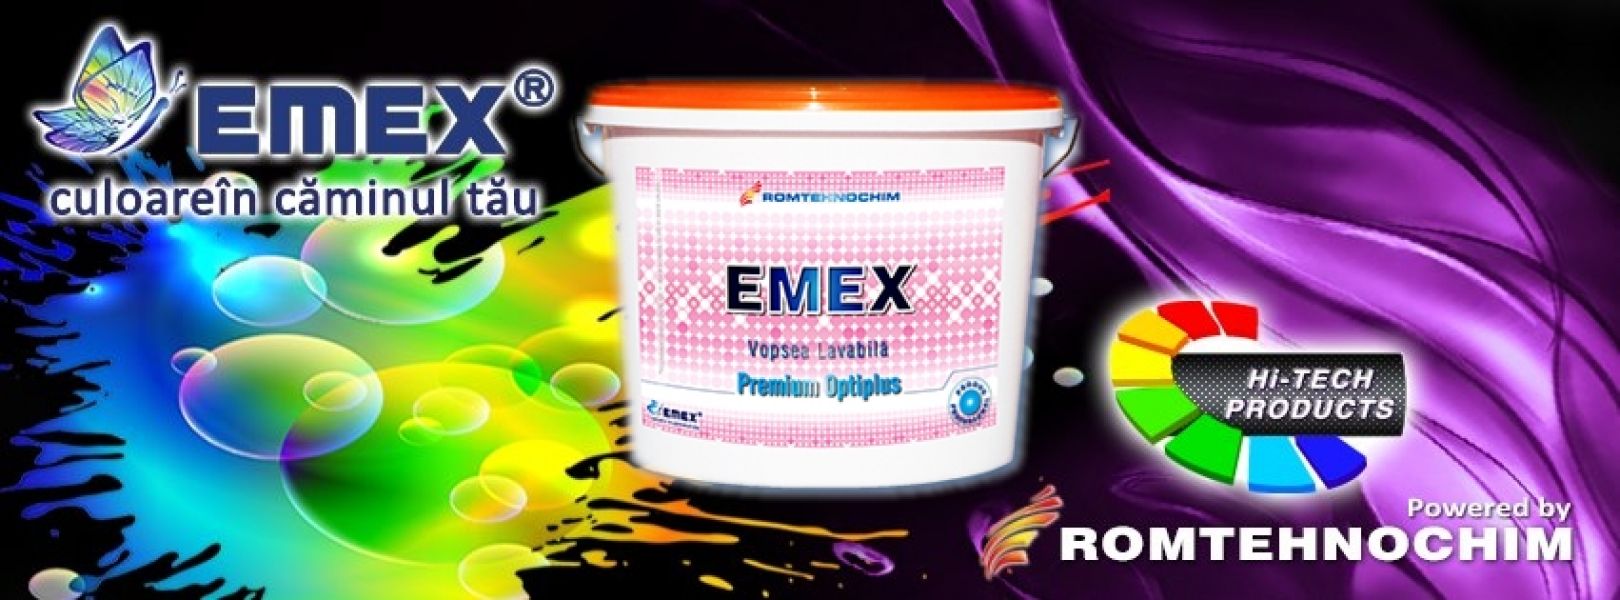 Vopsea Lavabila Premium EMEX OPTIPLUS - 129 Ron / Bidon 15 L